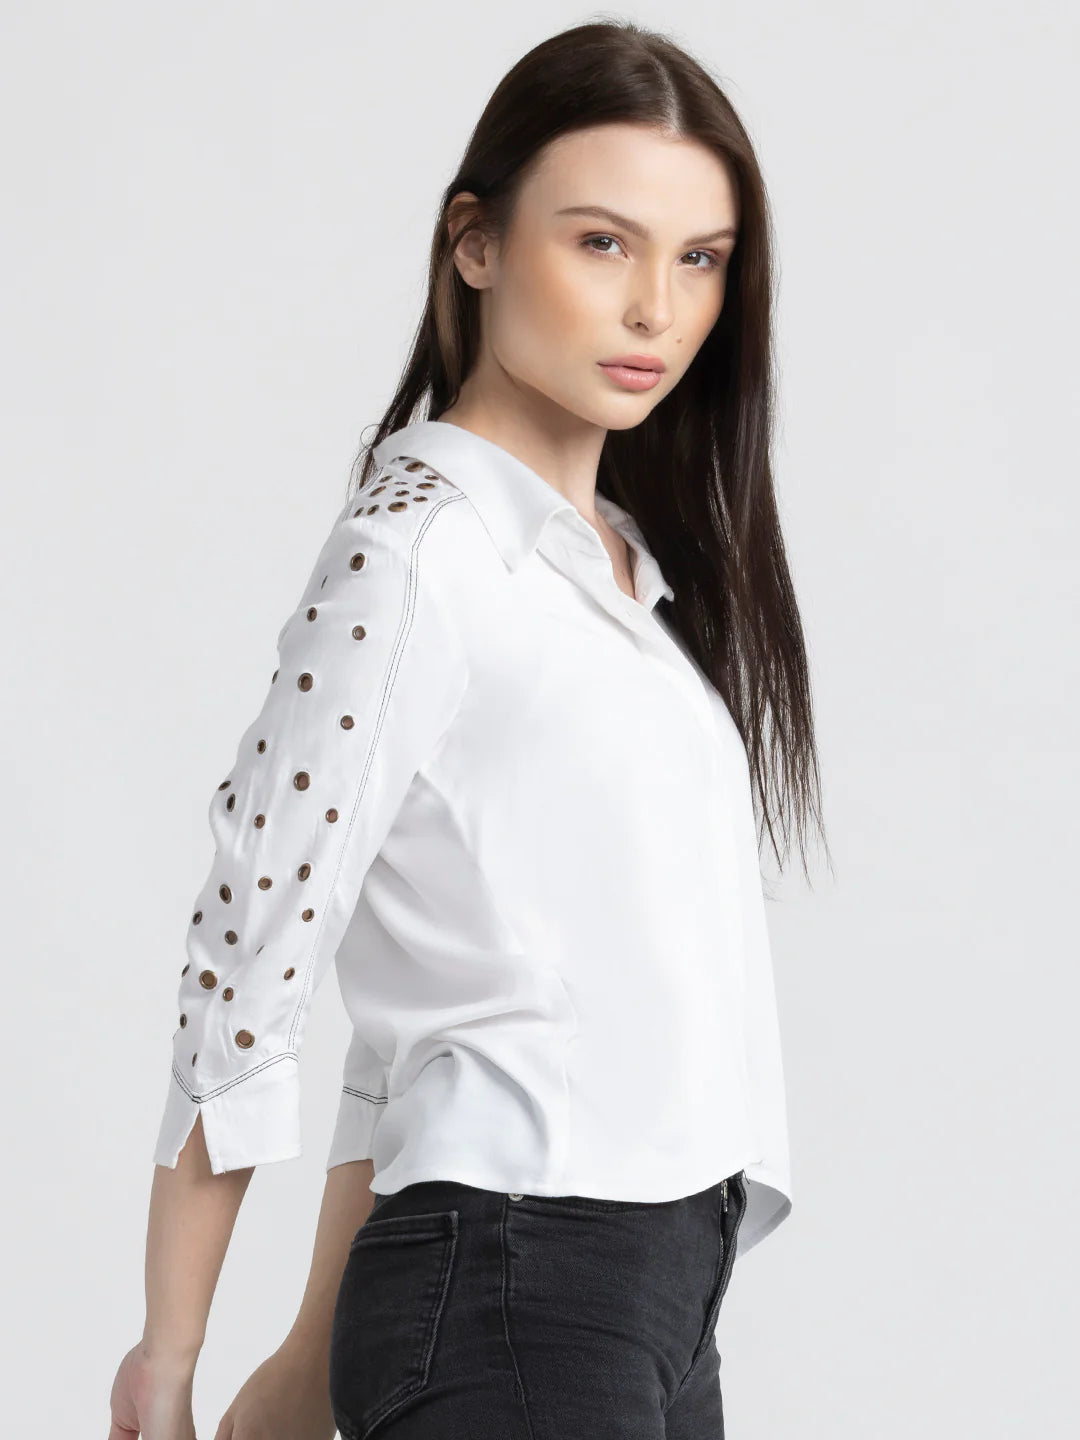 White Party Shirt for Women | Elegant White Eyelet Embellished Shirt